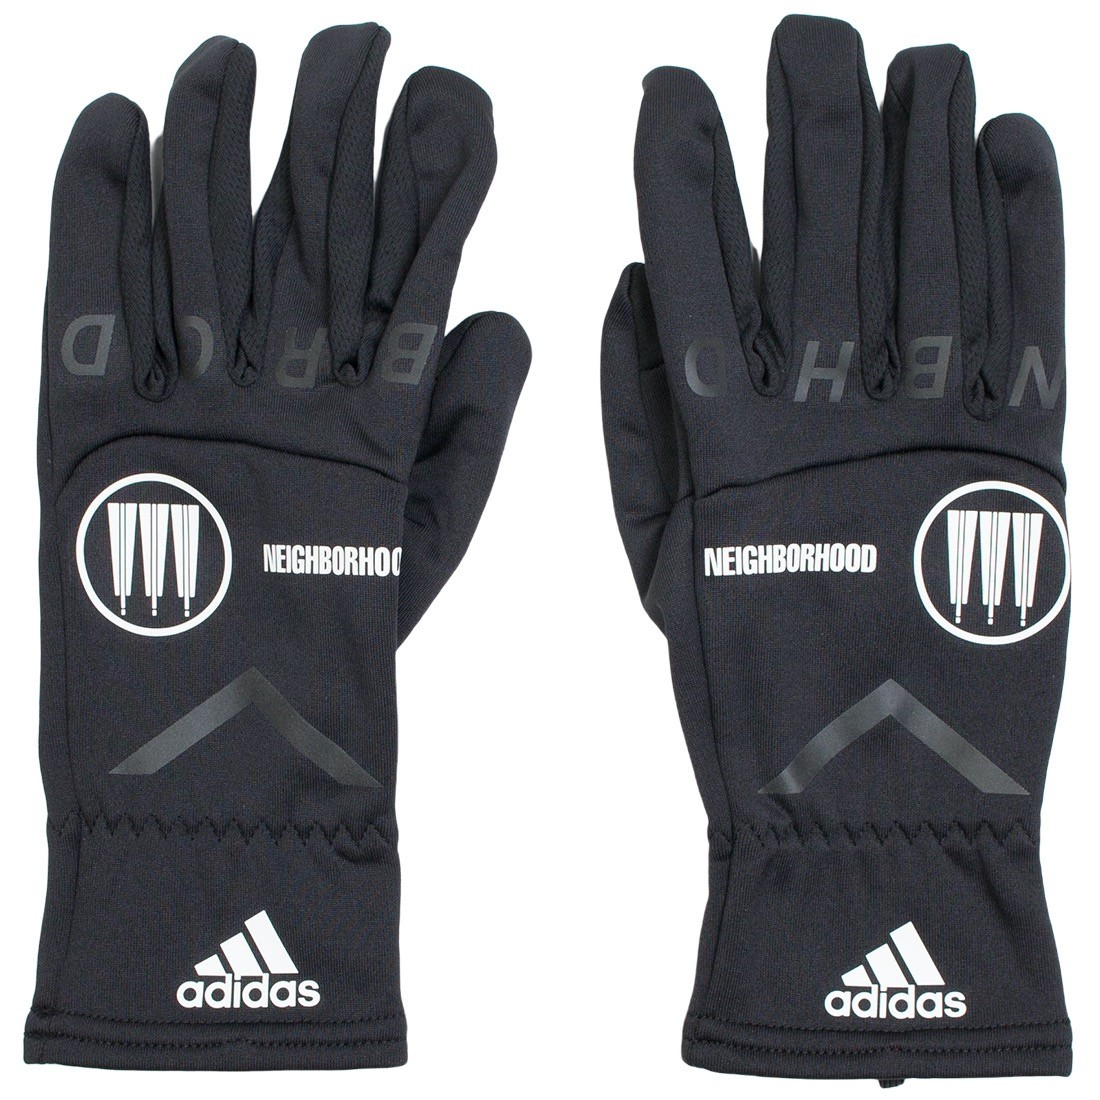 Adidas x Neighborhood NBHD Glove (black)